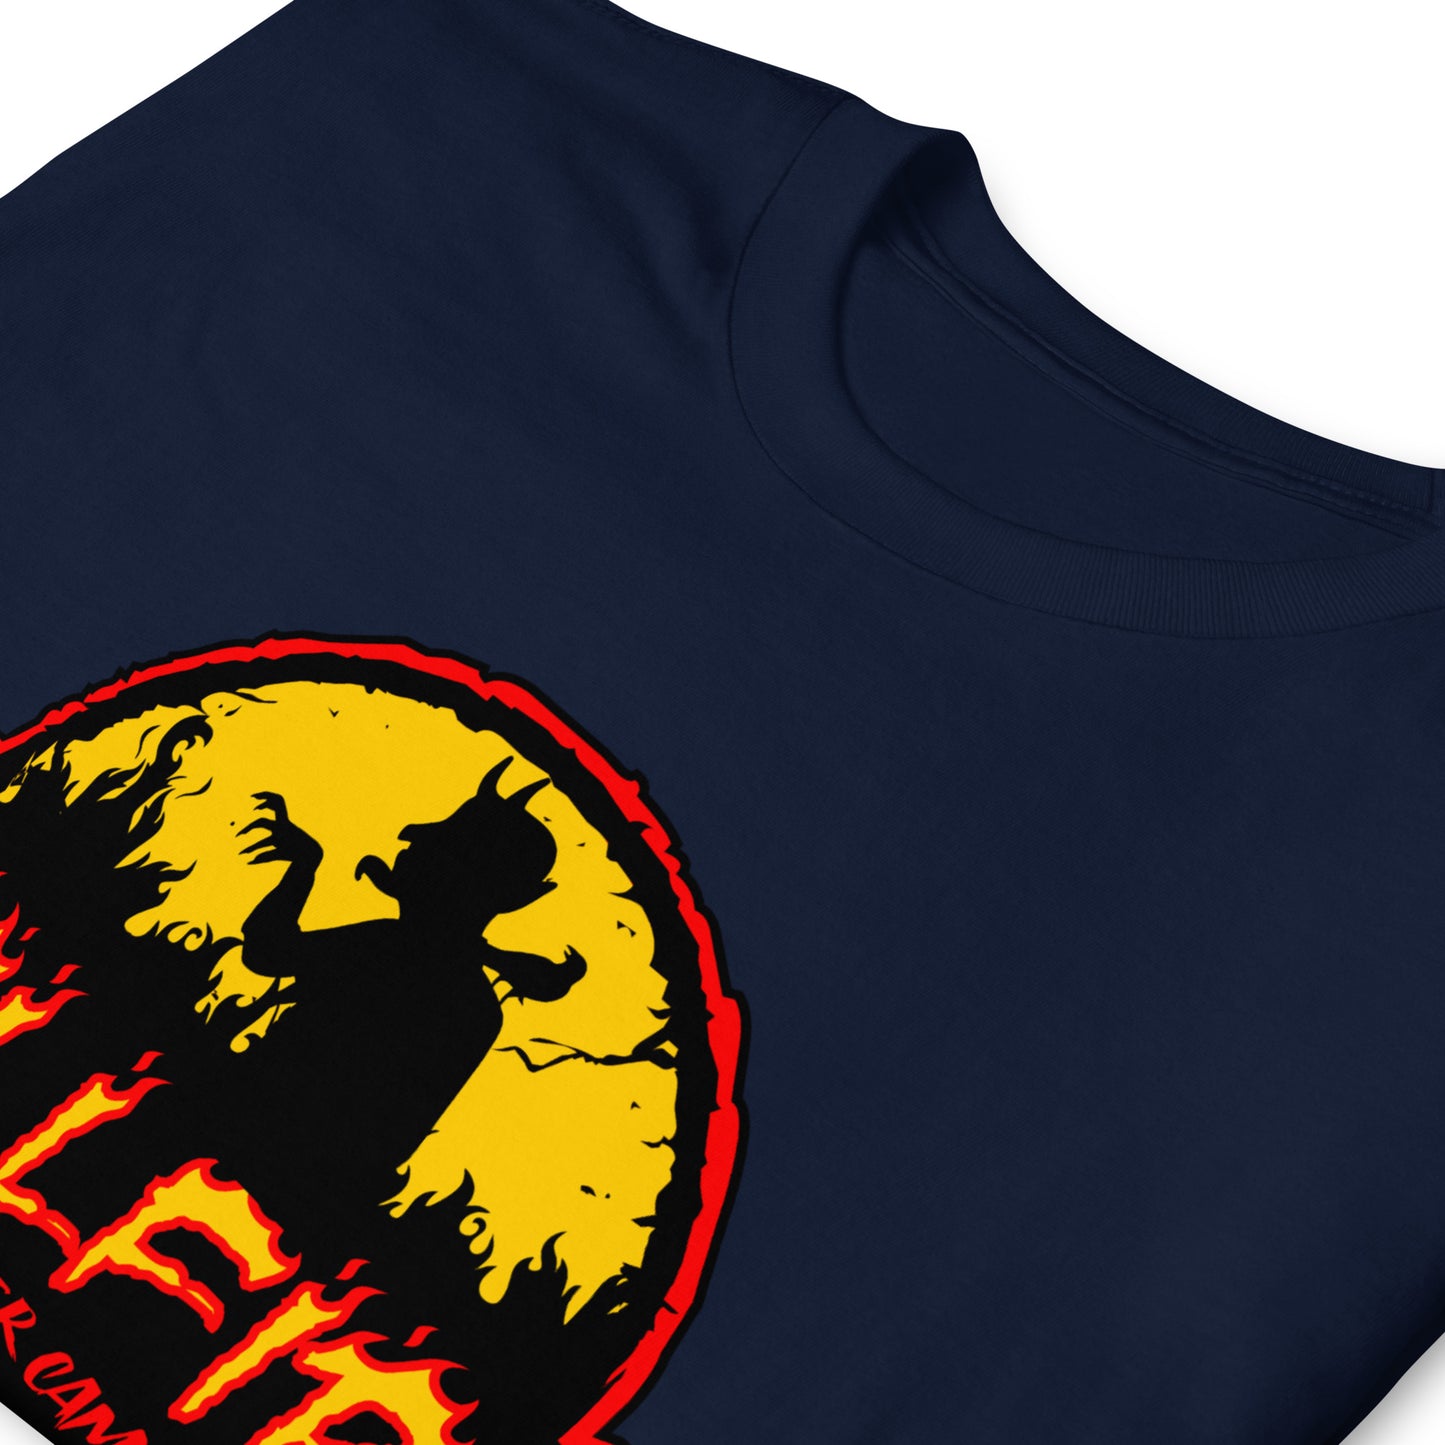 Hellfire Summer Camp Halloween Unisex T-Shirt